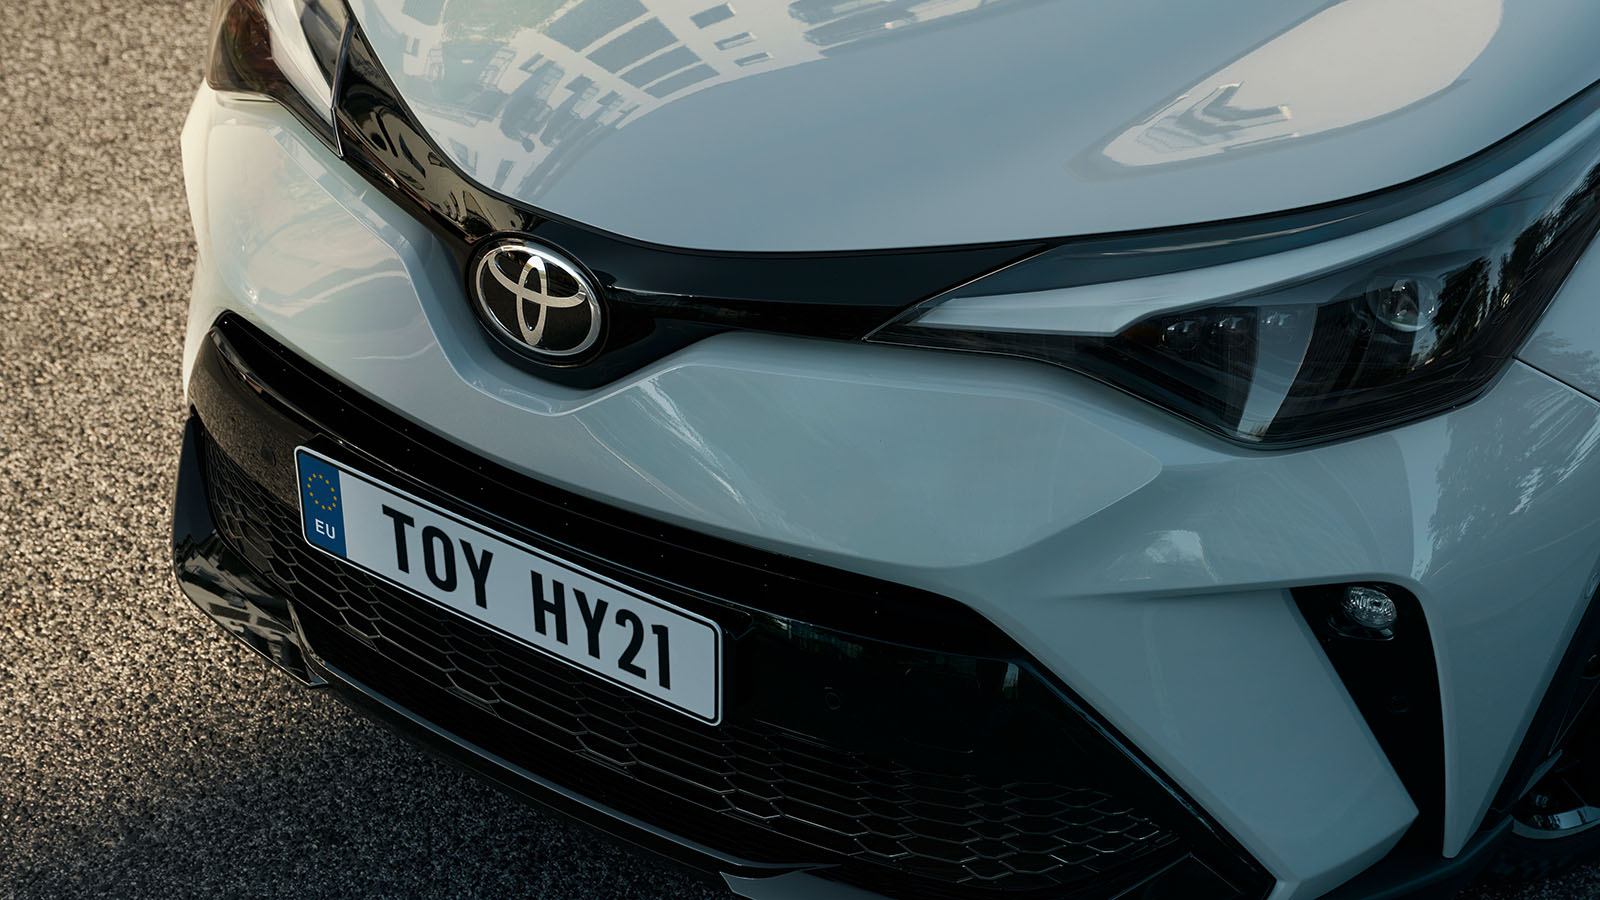 Toyota najczęściej wyszukiwaną marką samochodową